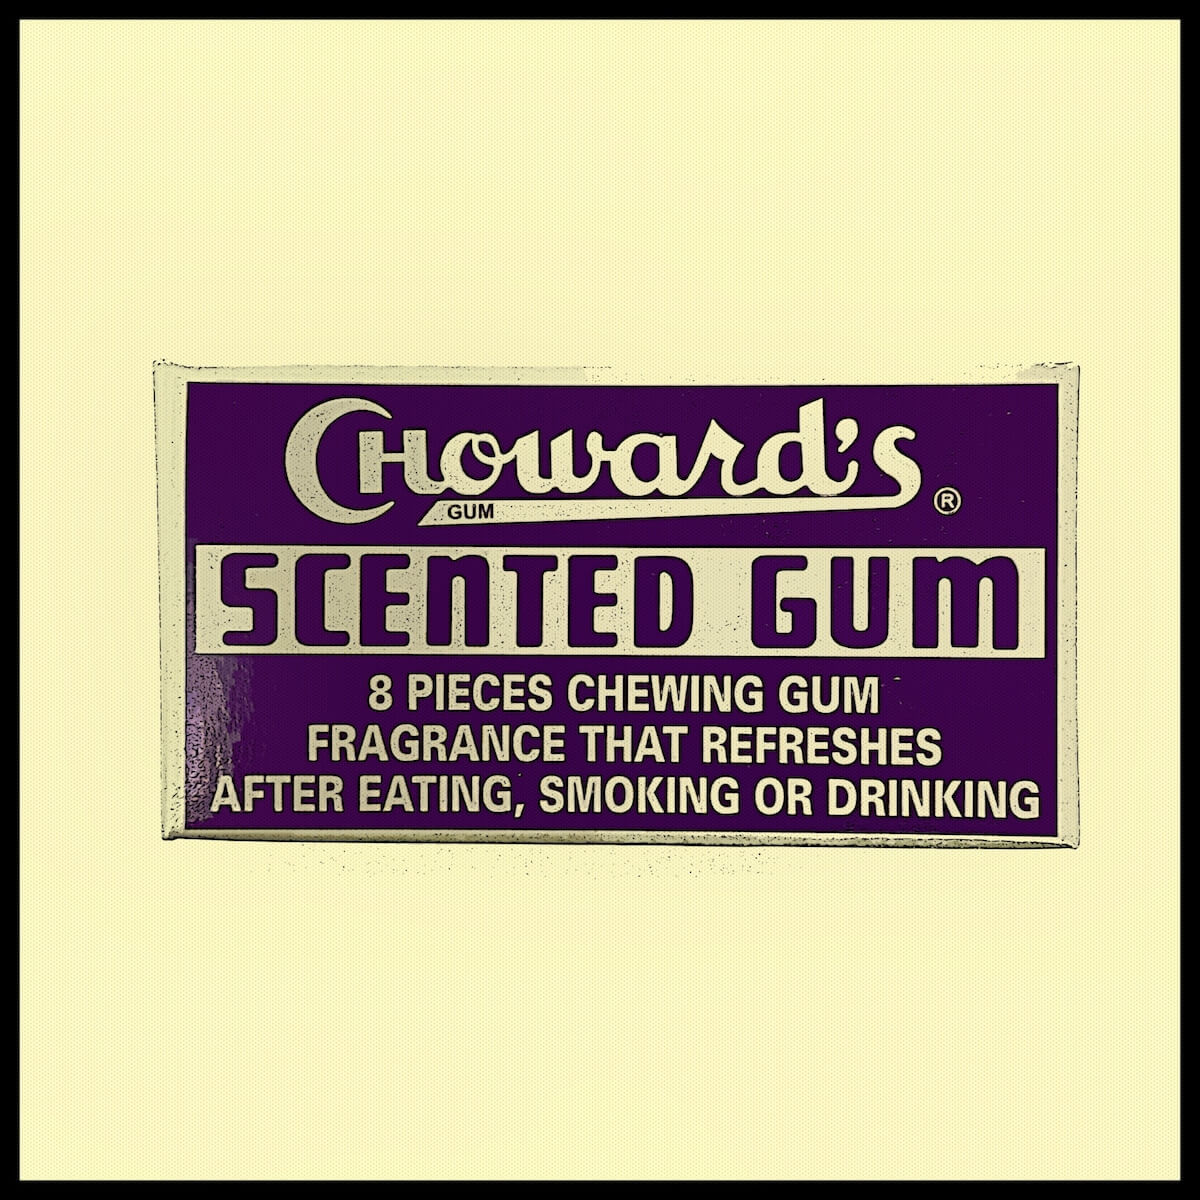 C Howard's Scented Gum